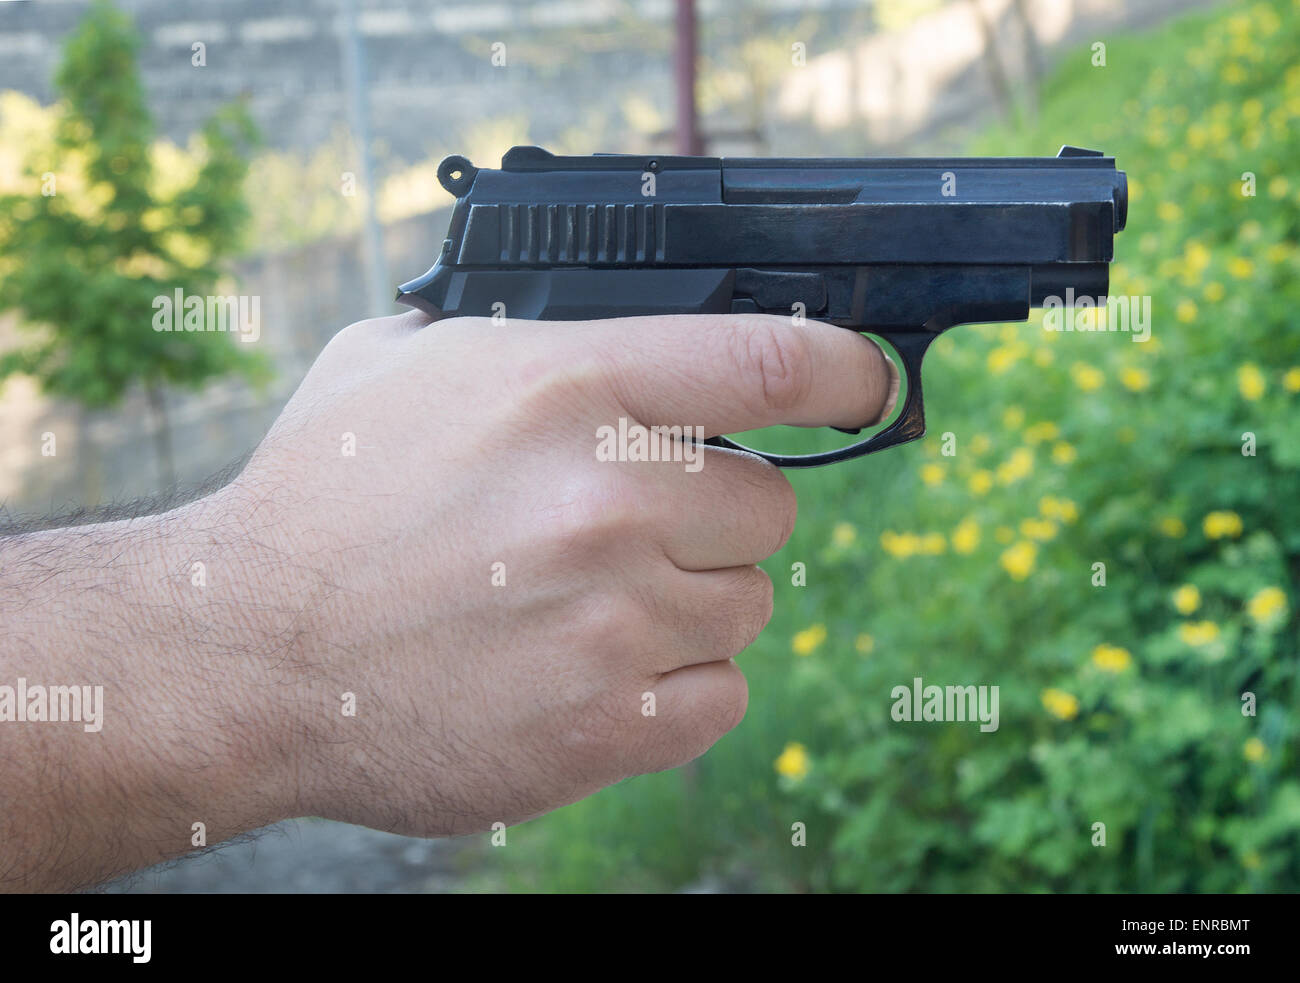 Dettaglio del mans mano azienda pistola automatica Foto Stock